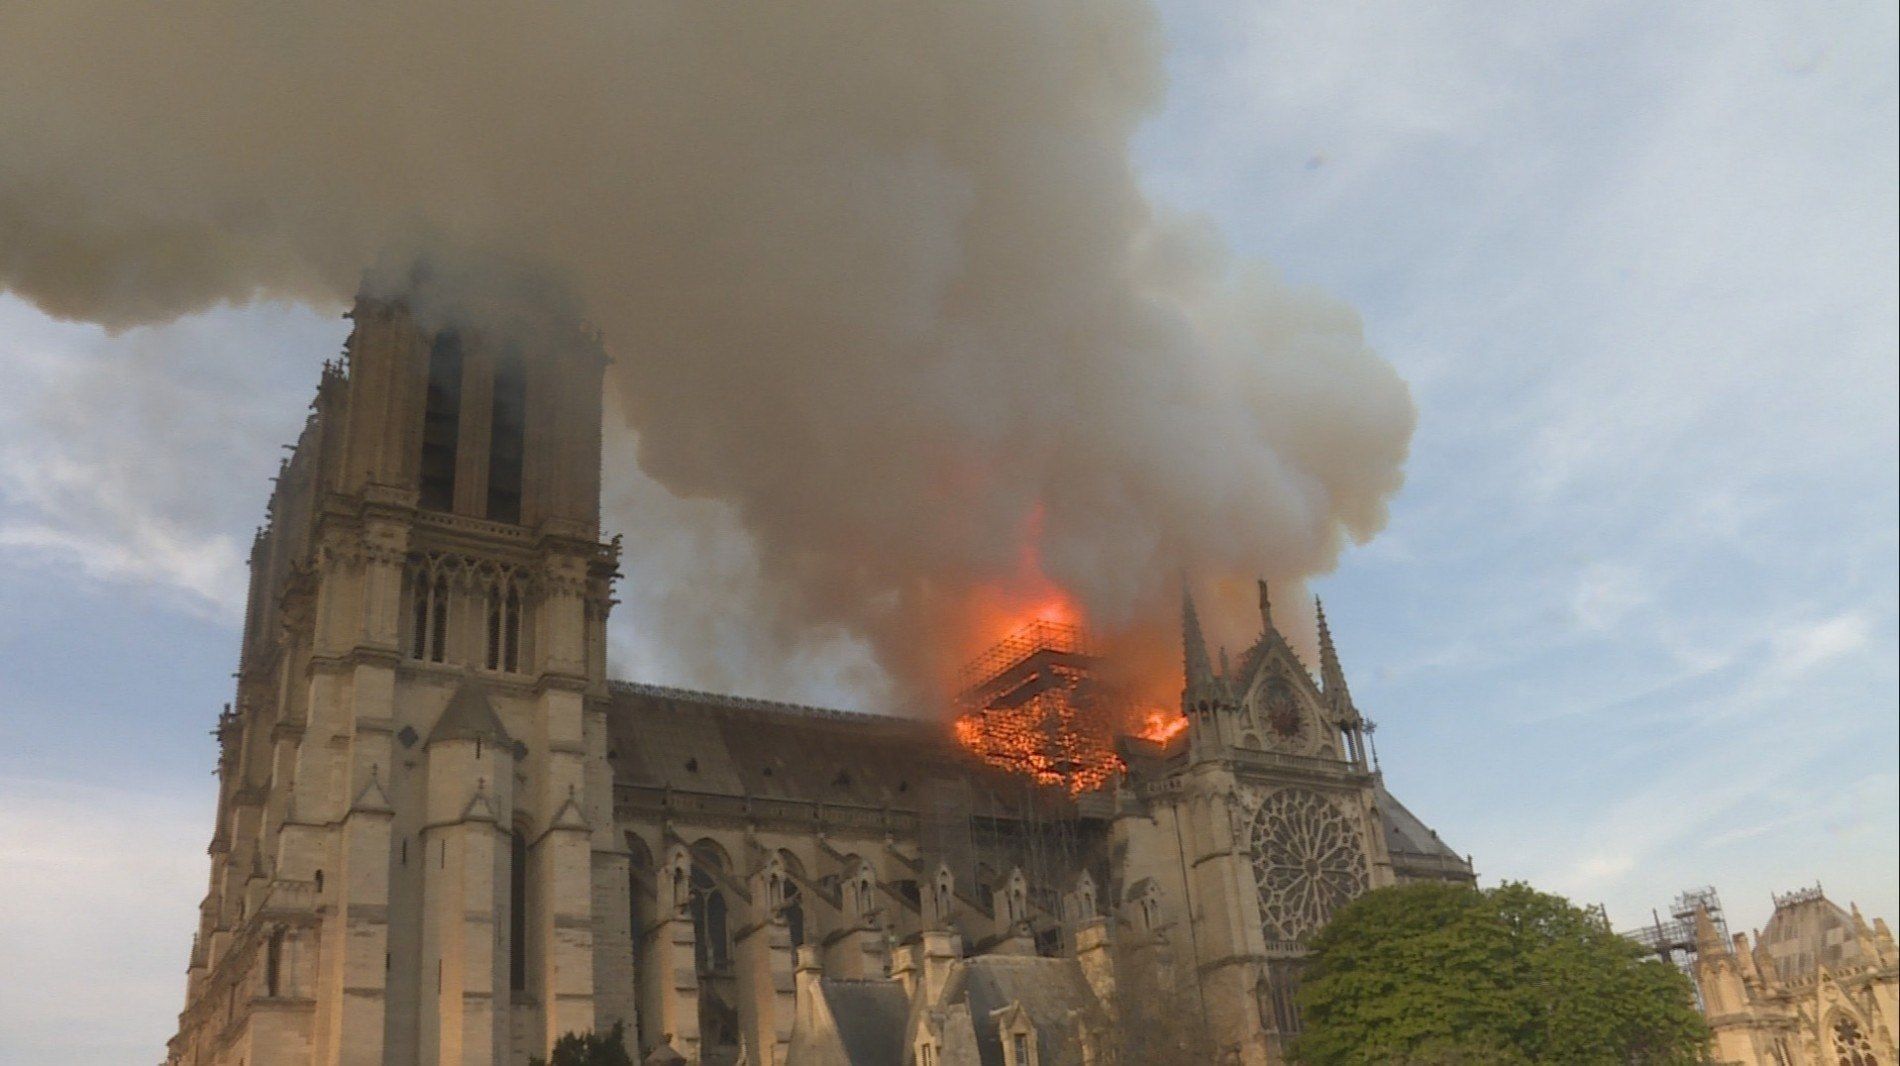 Cubierta de Notre Dame: La increíble carrera contra el infierno